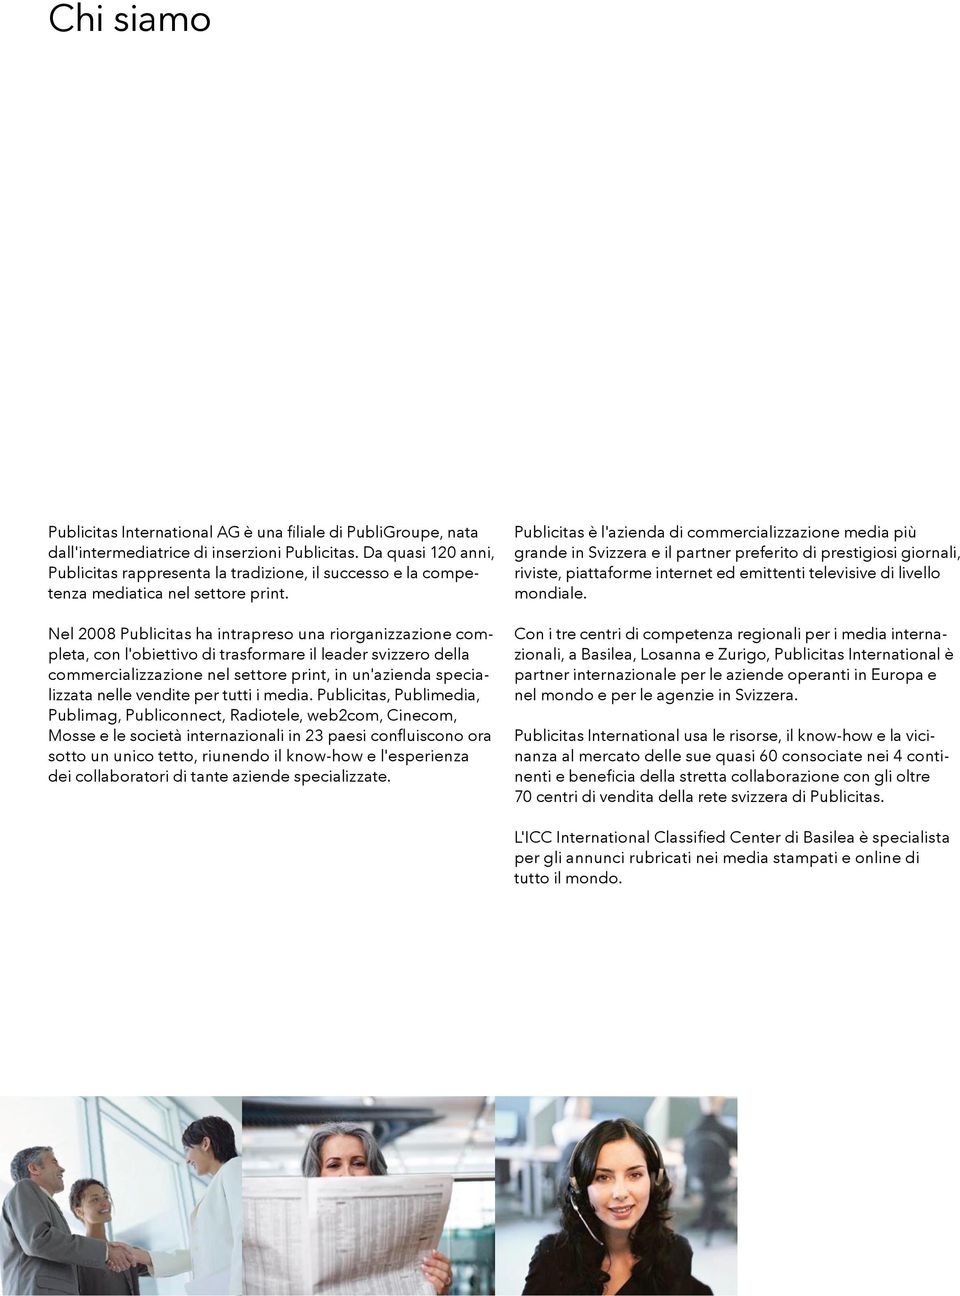 Nel 2008 Publicitas ha intrapreso una riorganizzazione completa, con l'obiettivo di trasformare il leader svizzero della commercializzazione nel settore print, in un'azienda specializzata nelle